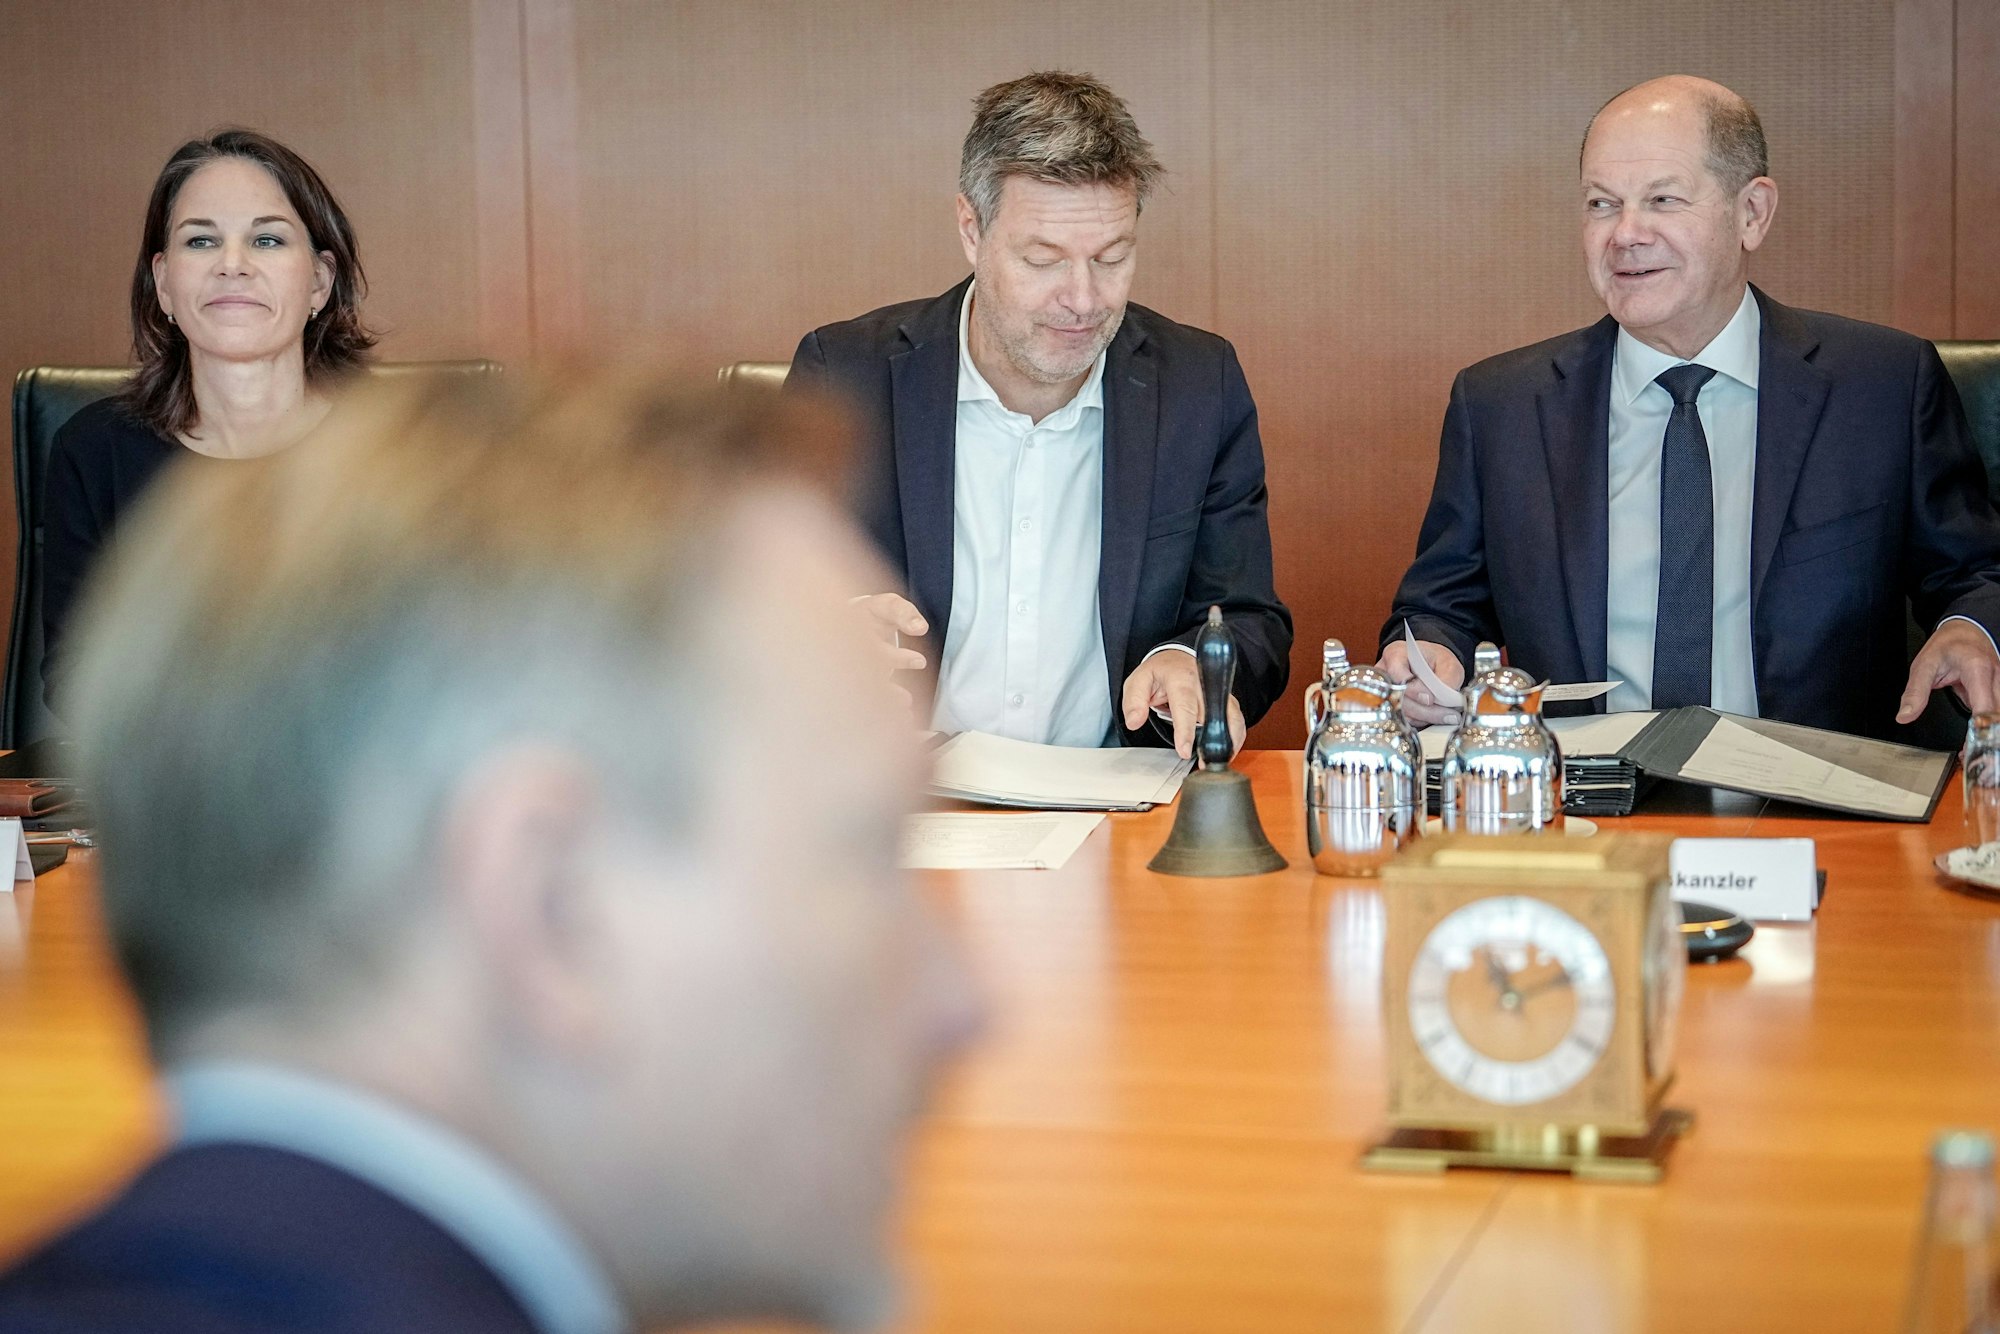 Bundeskanzler Olaf Scholz, Robert Habeck, Christian Lindner und Annalena Baerbock nehmen an der Sitzung des Bundeskabinetts im Bundeskanzleramt teil.